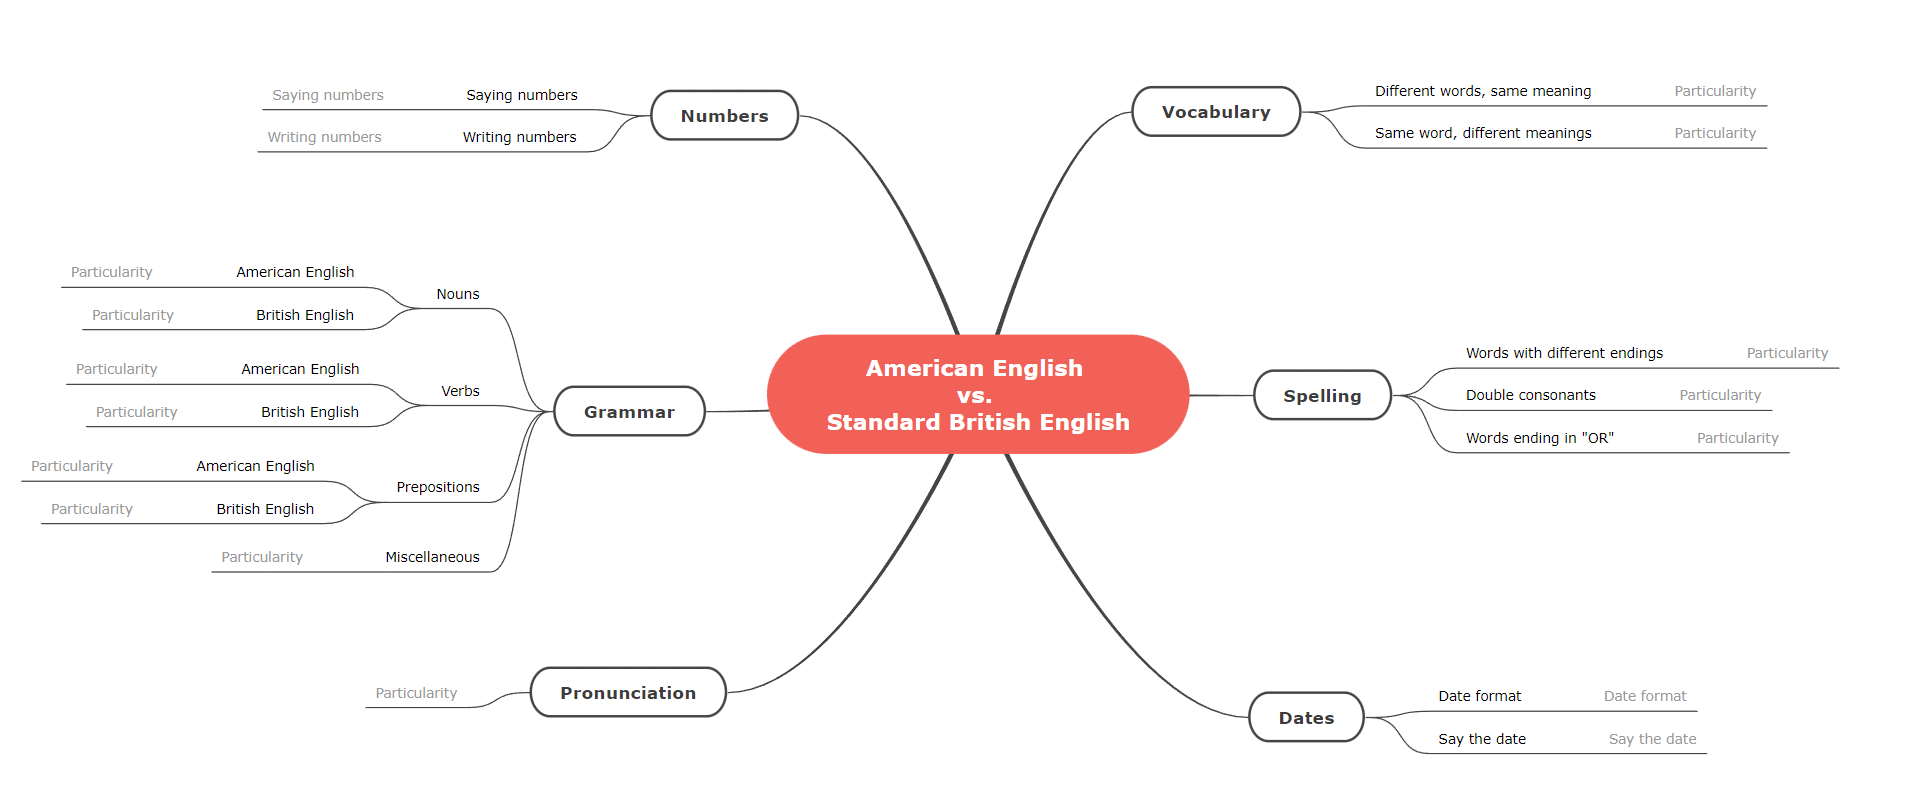 10. American English vs. British English